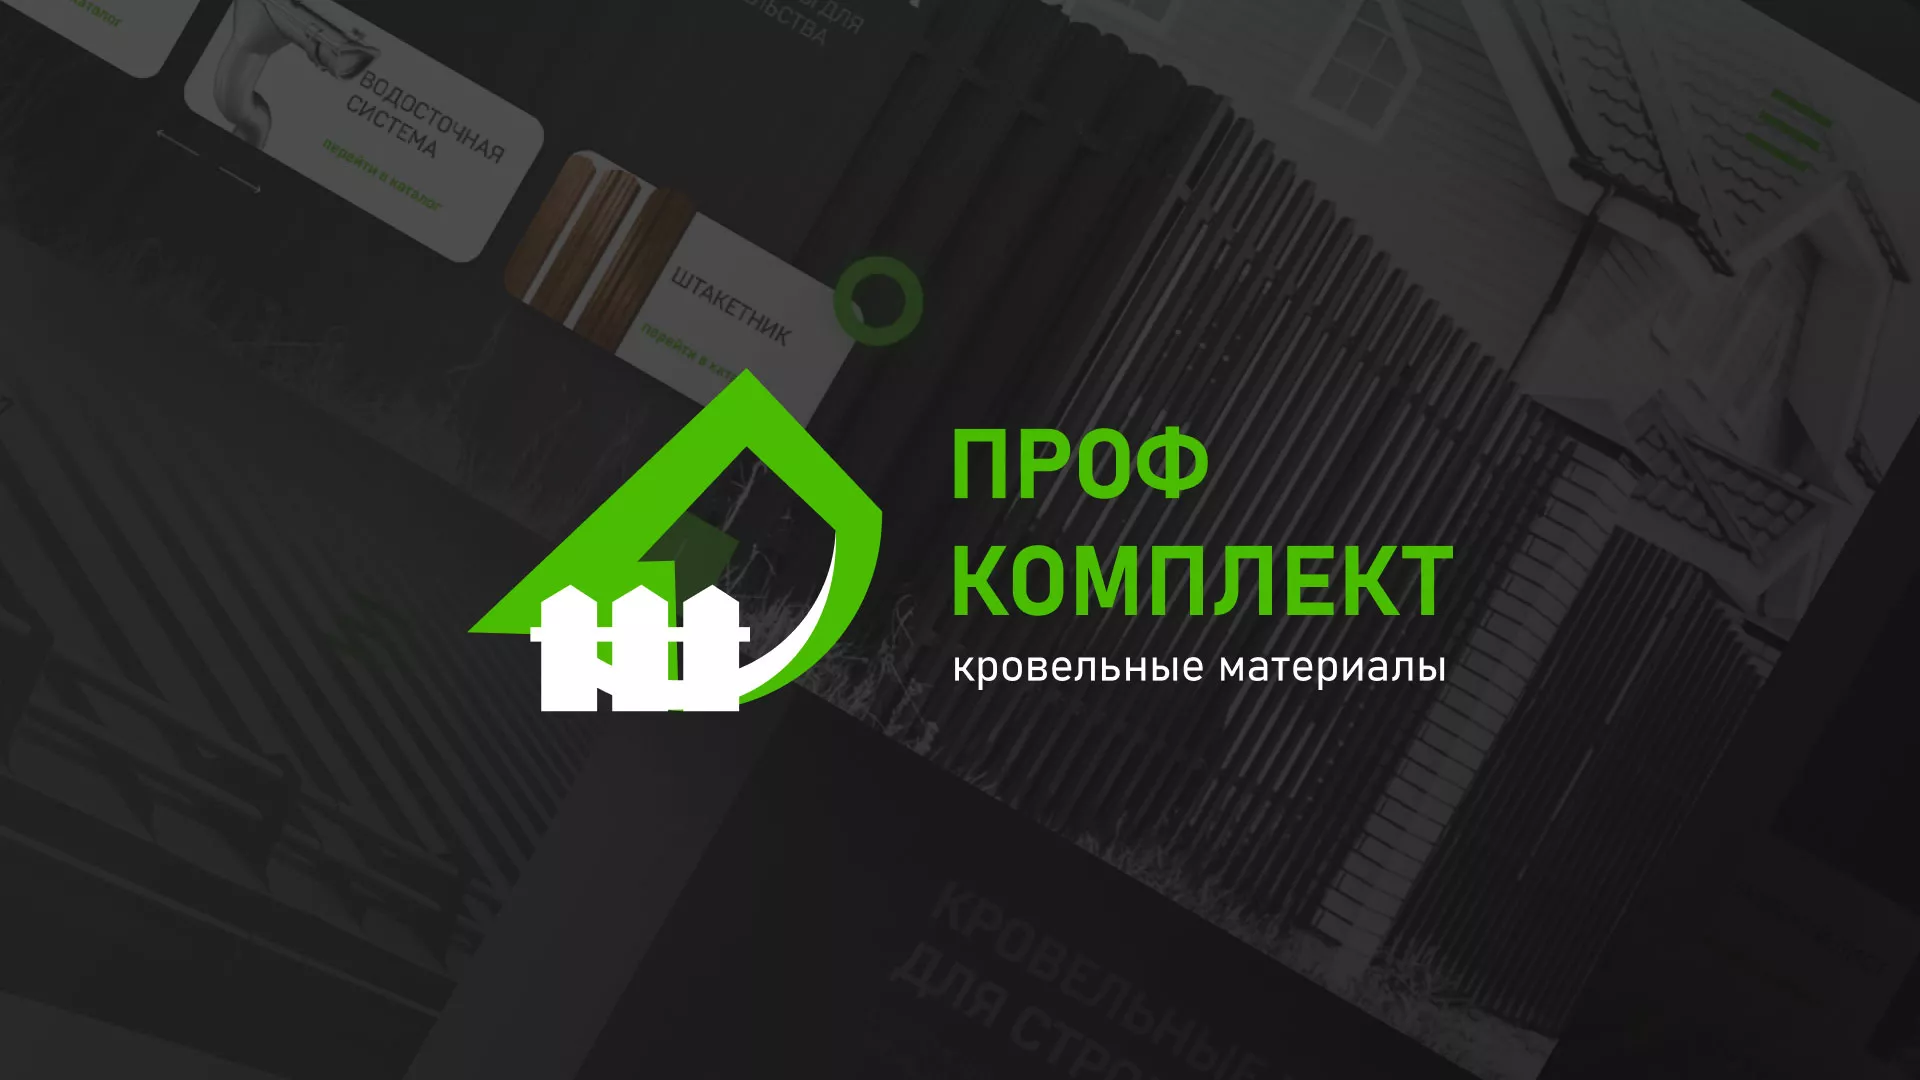 Создание сайта компании «Проф Комплект» в Пугачёве